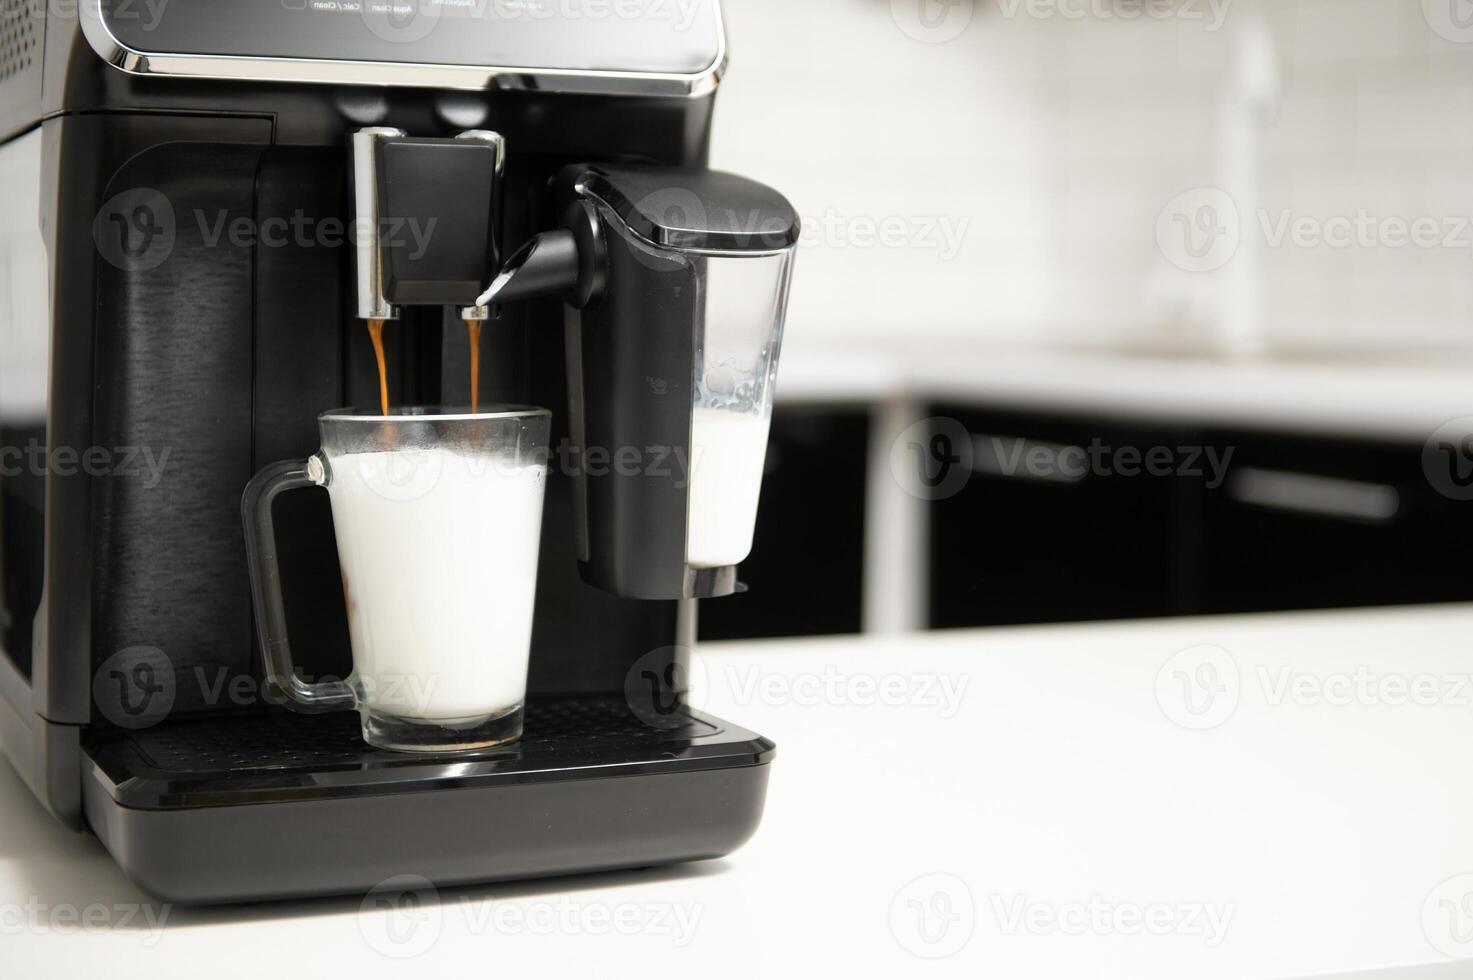 Cappuccino and espresso coffee machine photo